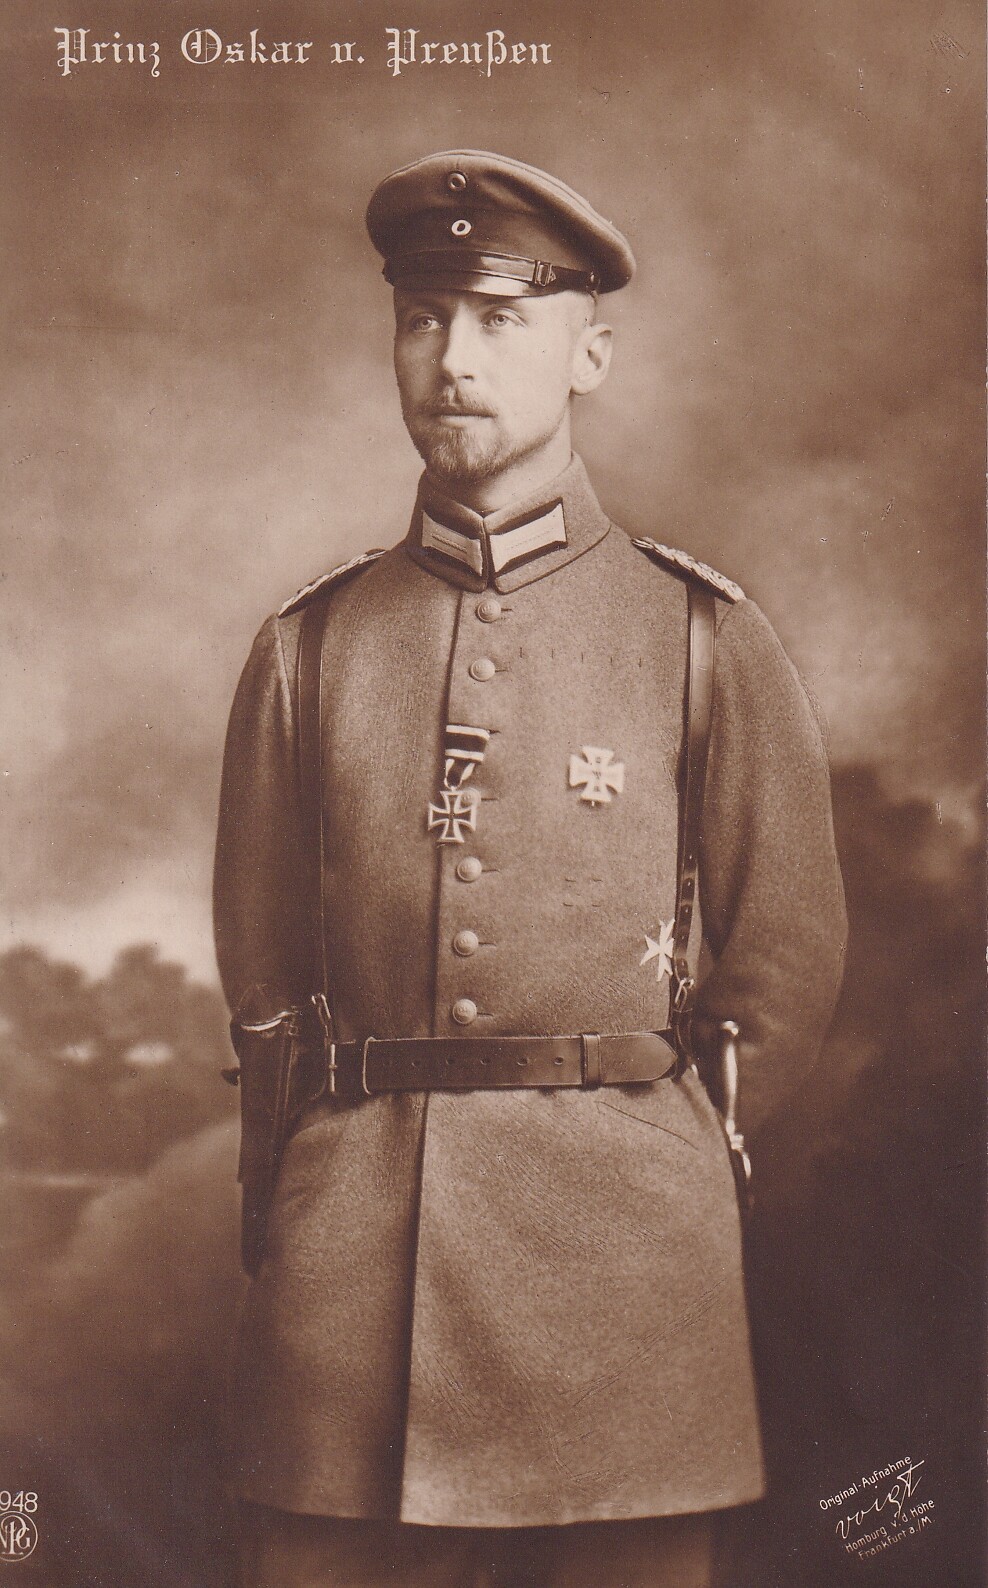 Bildpostkarte mit Foto des Prinzen Oskar von Preußen (1888-1958), 1914 (Schloß Wernigerode GmbH RR-F)